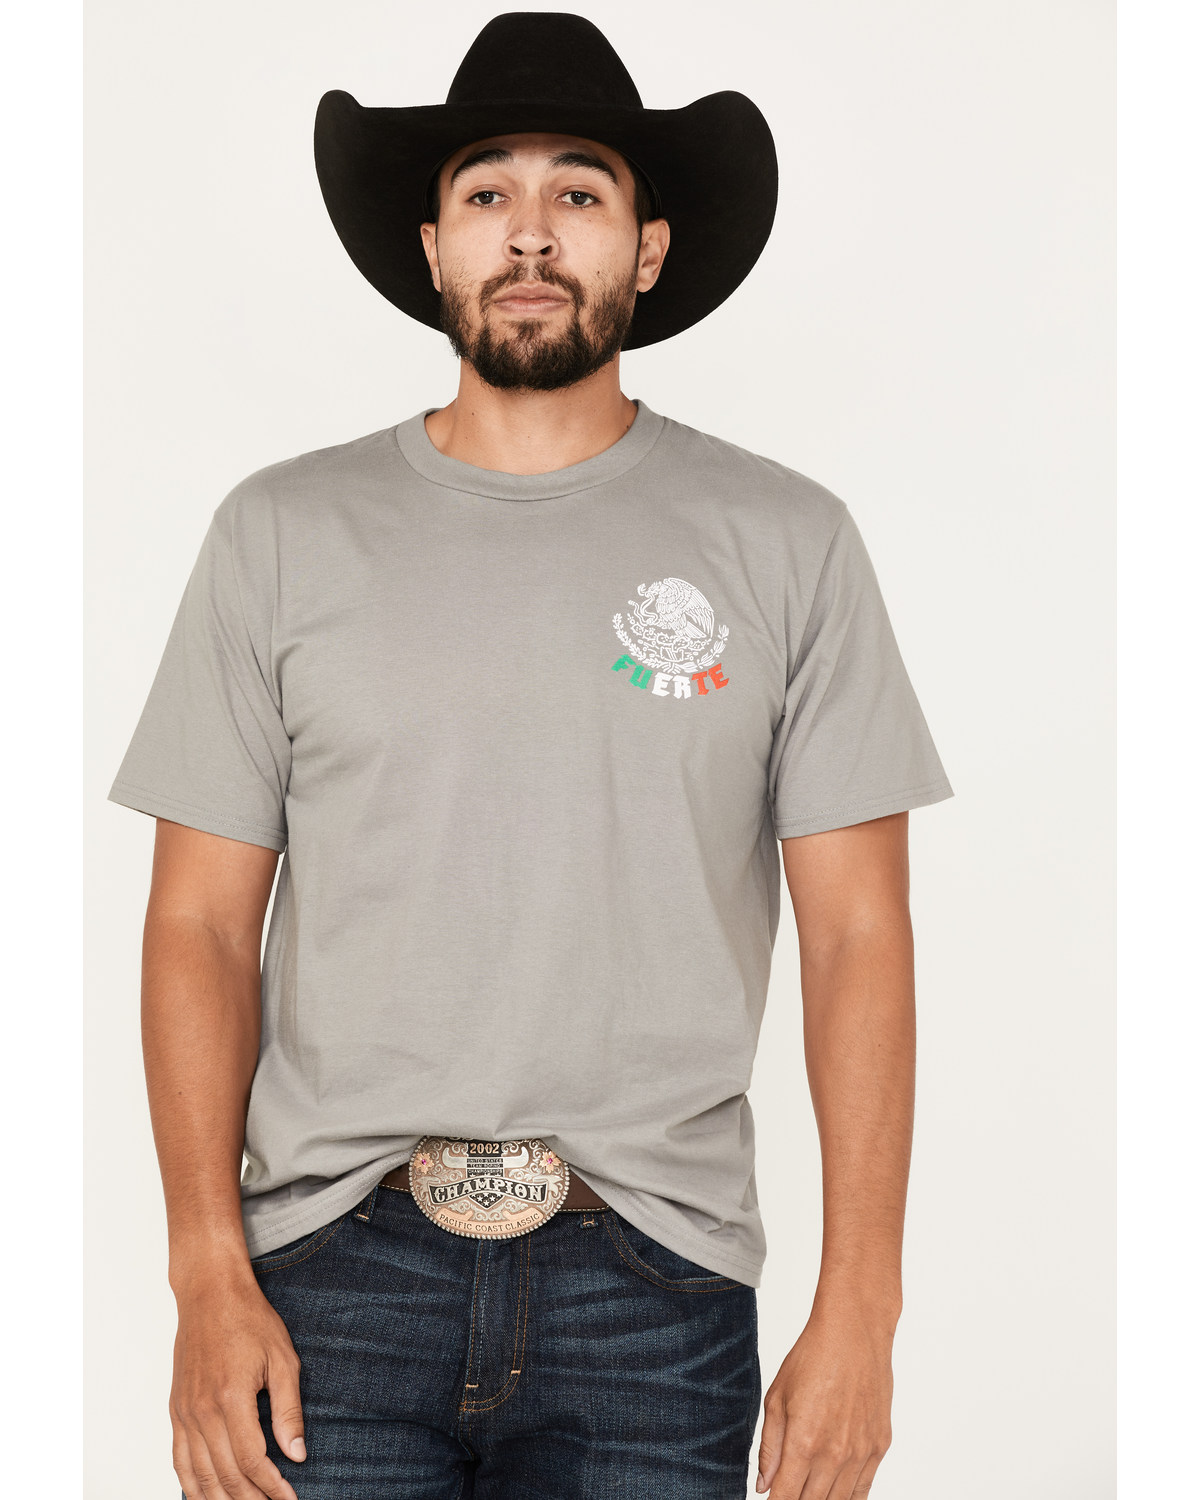 Cowboy Hardware Men's Mexico Fuerte Graphic T-Shirt